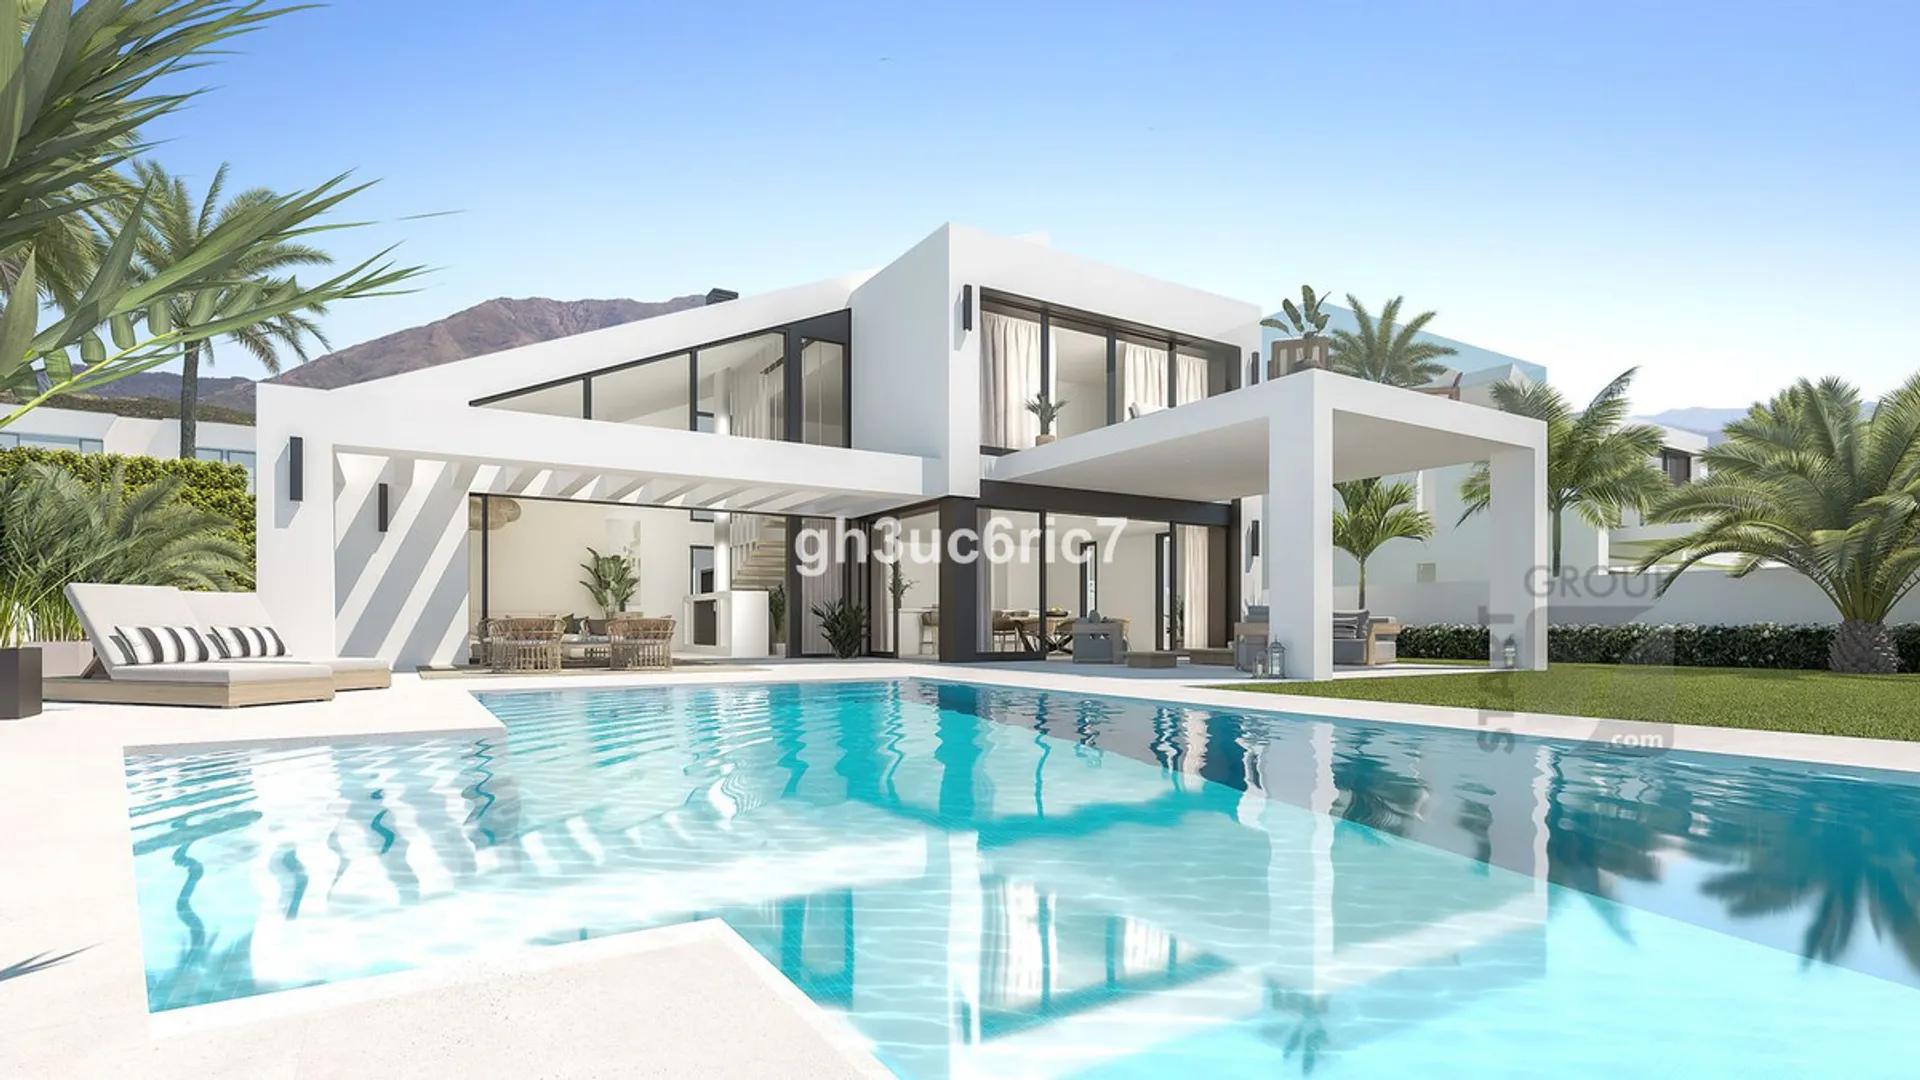 Lujosas villas mediterráneas en Los Roques con piscina privada y diseño arquitectónico espectacular